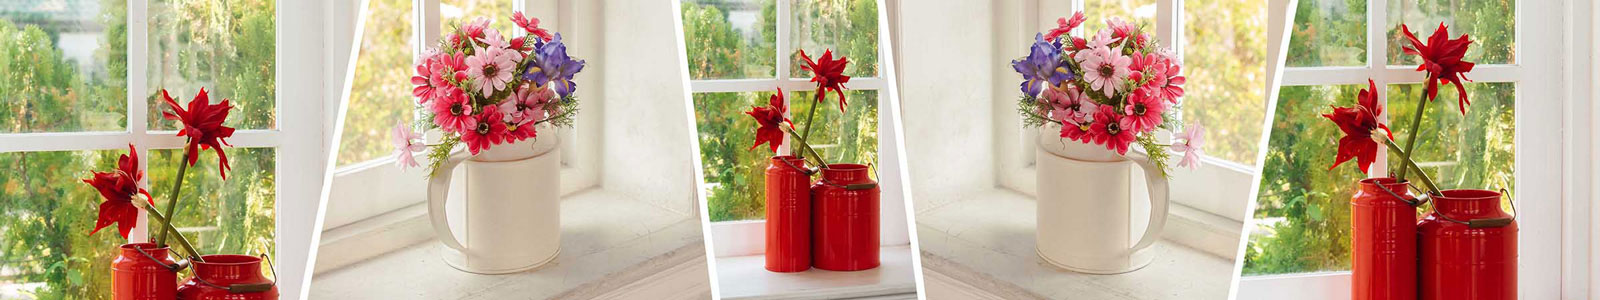 №2901 - Цветы в вазочках на окне в ясный день